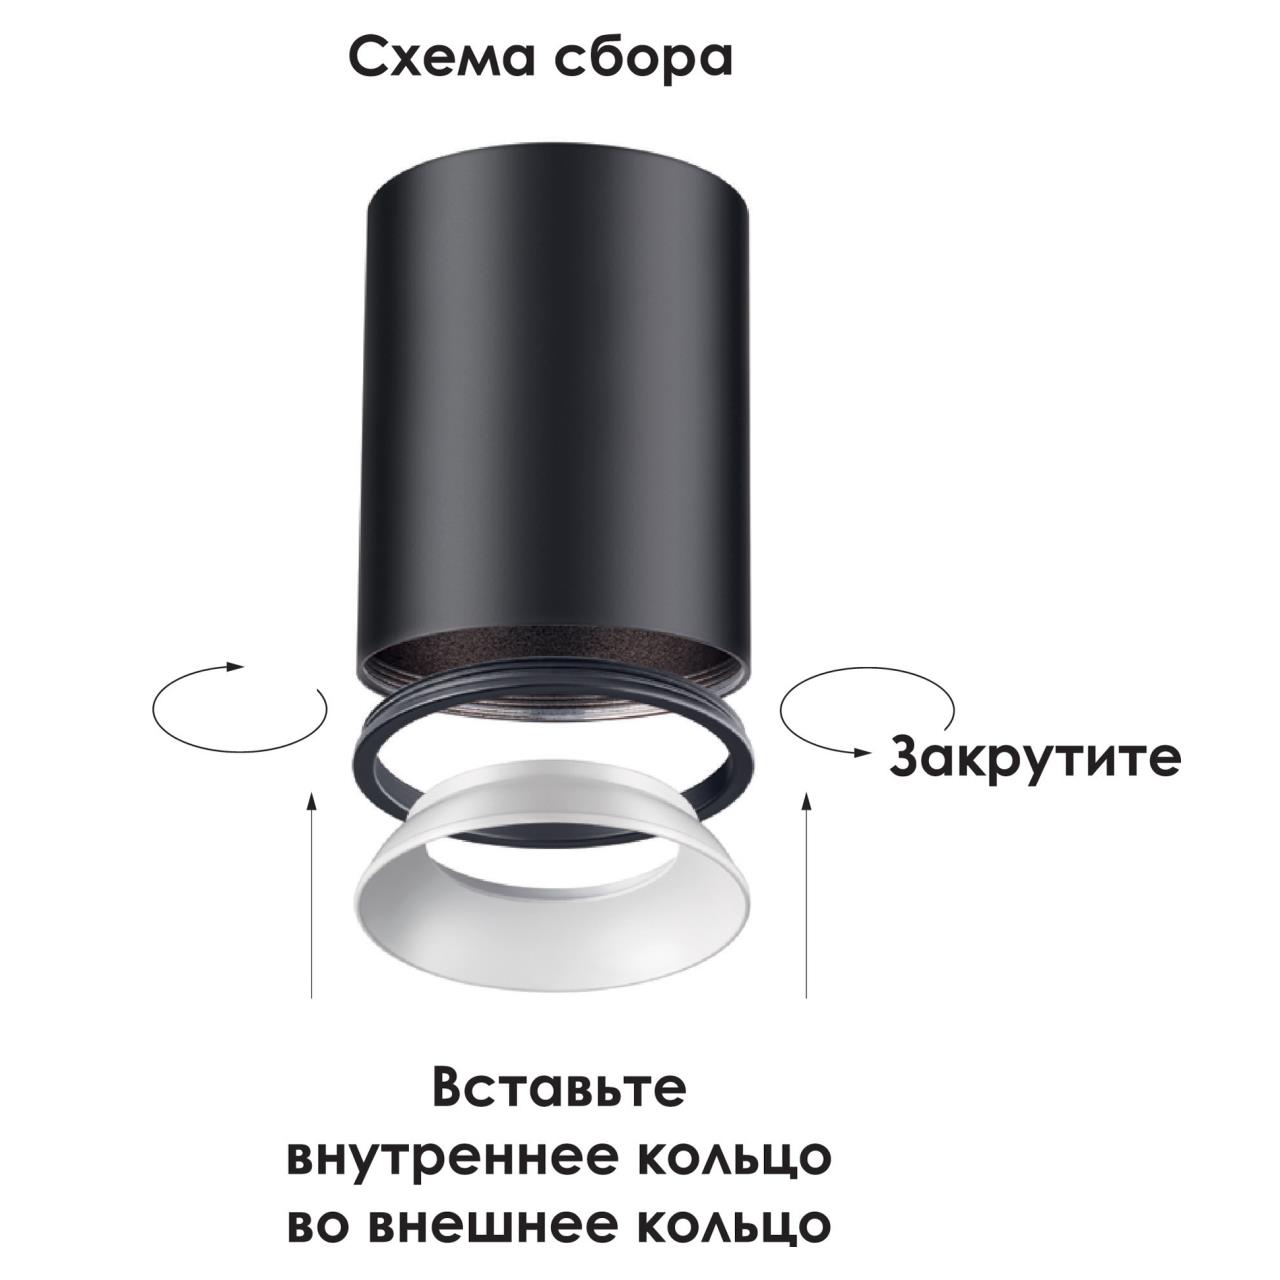 Внешнее декоративное кольцо к артикулам 370529 - 370534 Novotech Unite 370544 в Москве